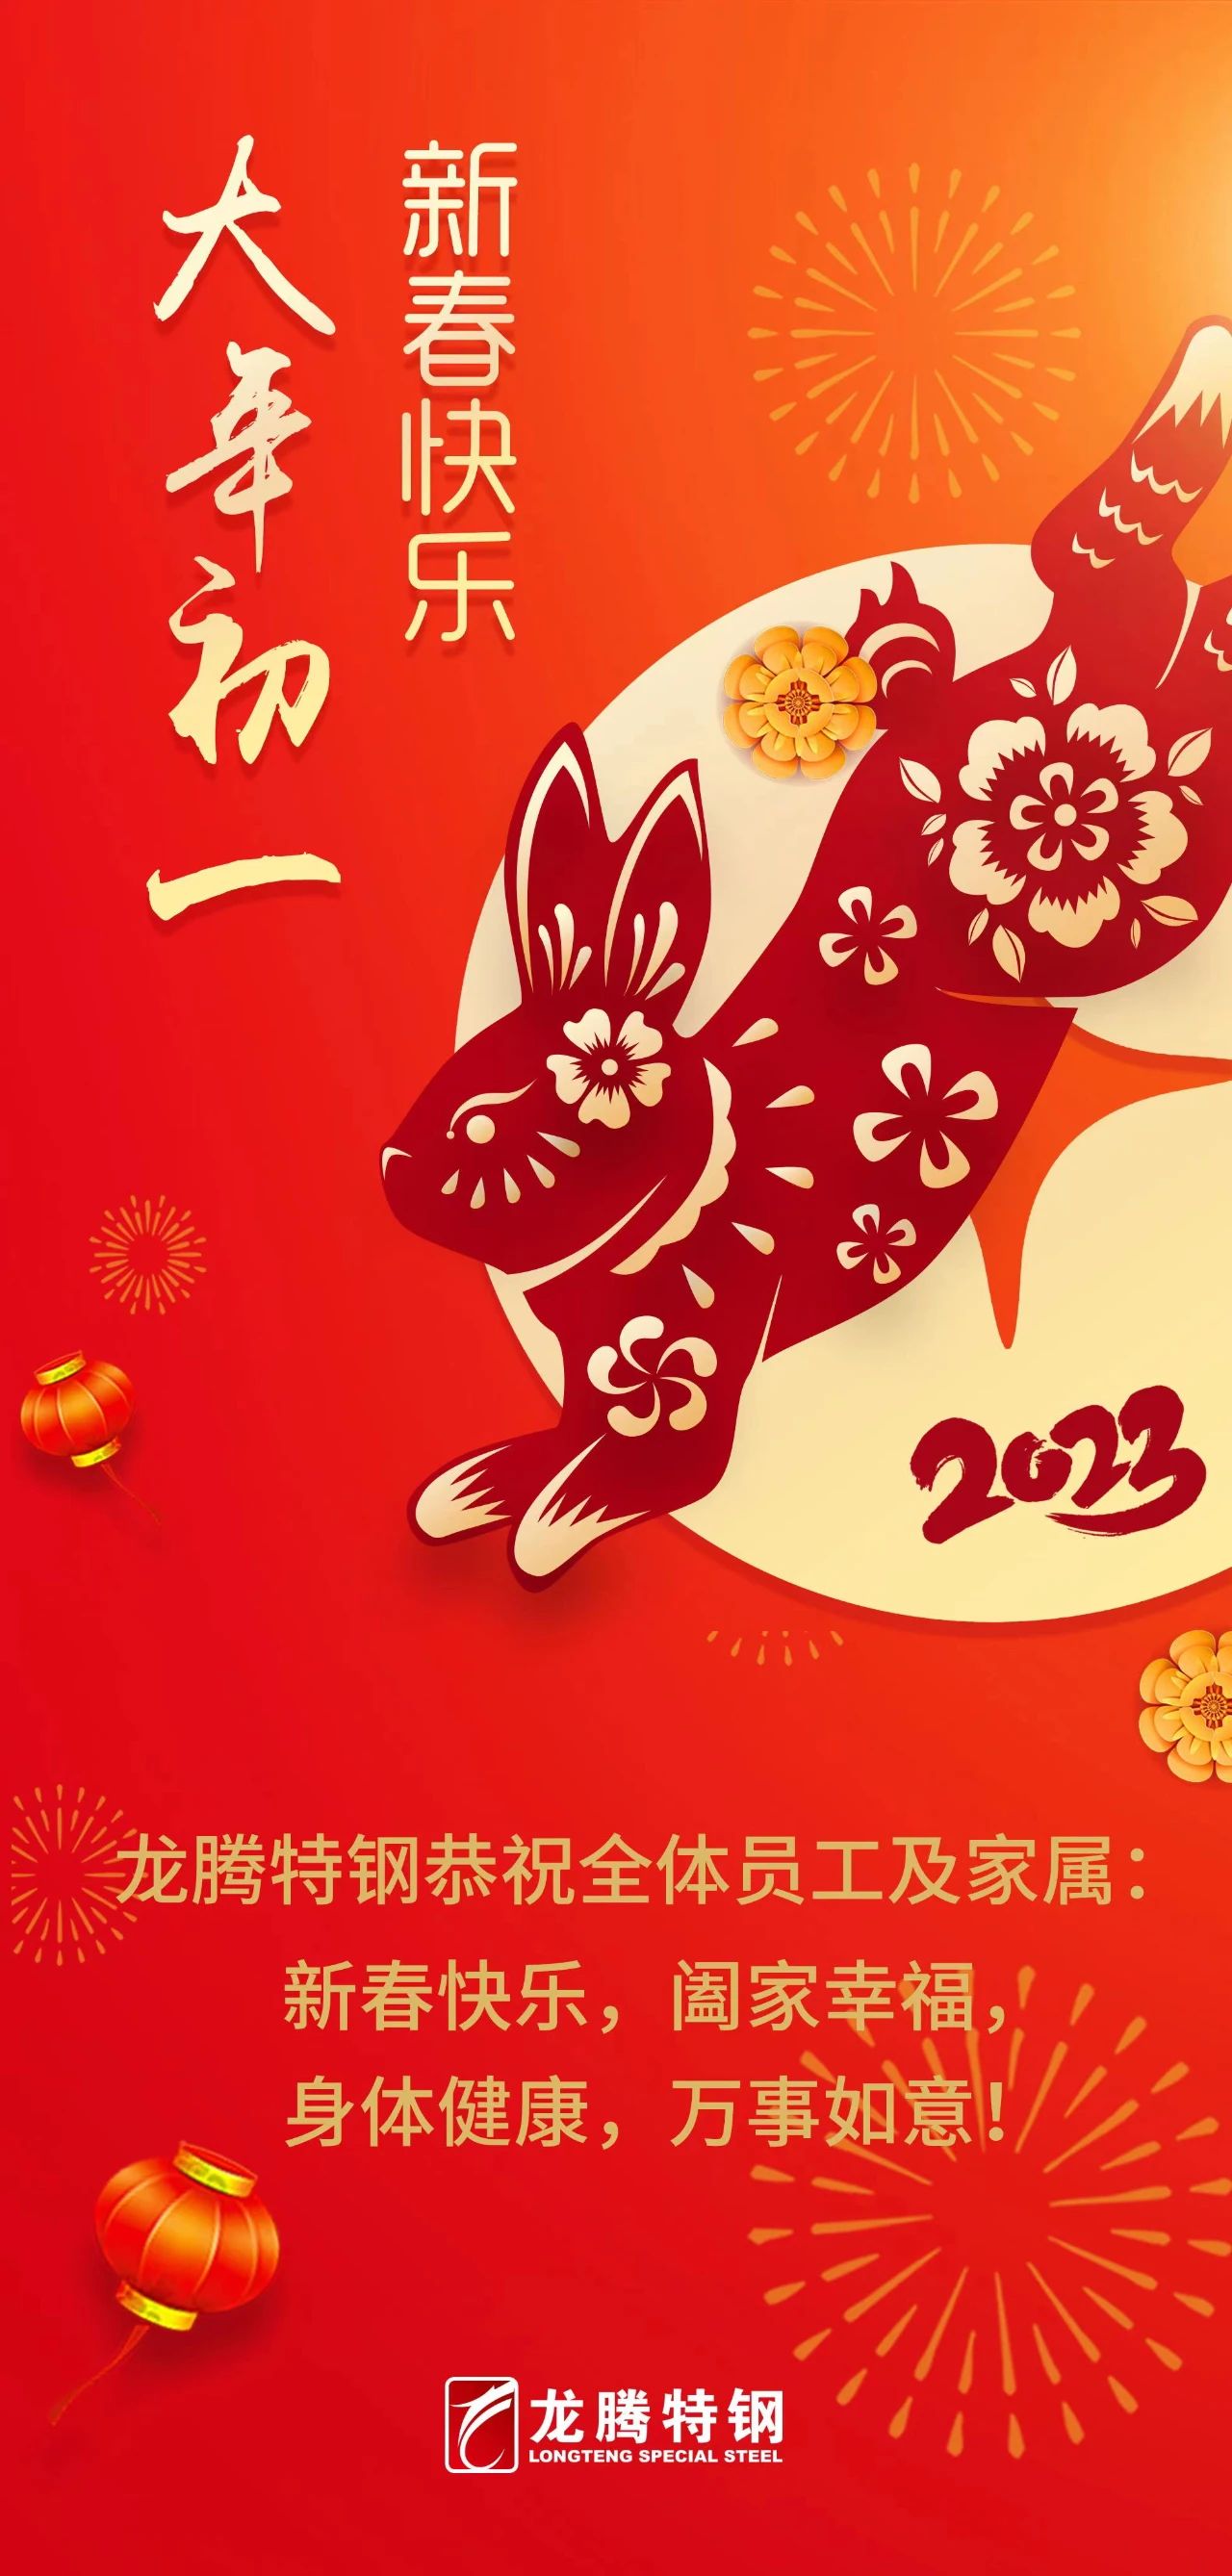 龍騰特鋼恭祝全體員工新春快樂！